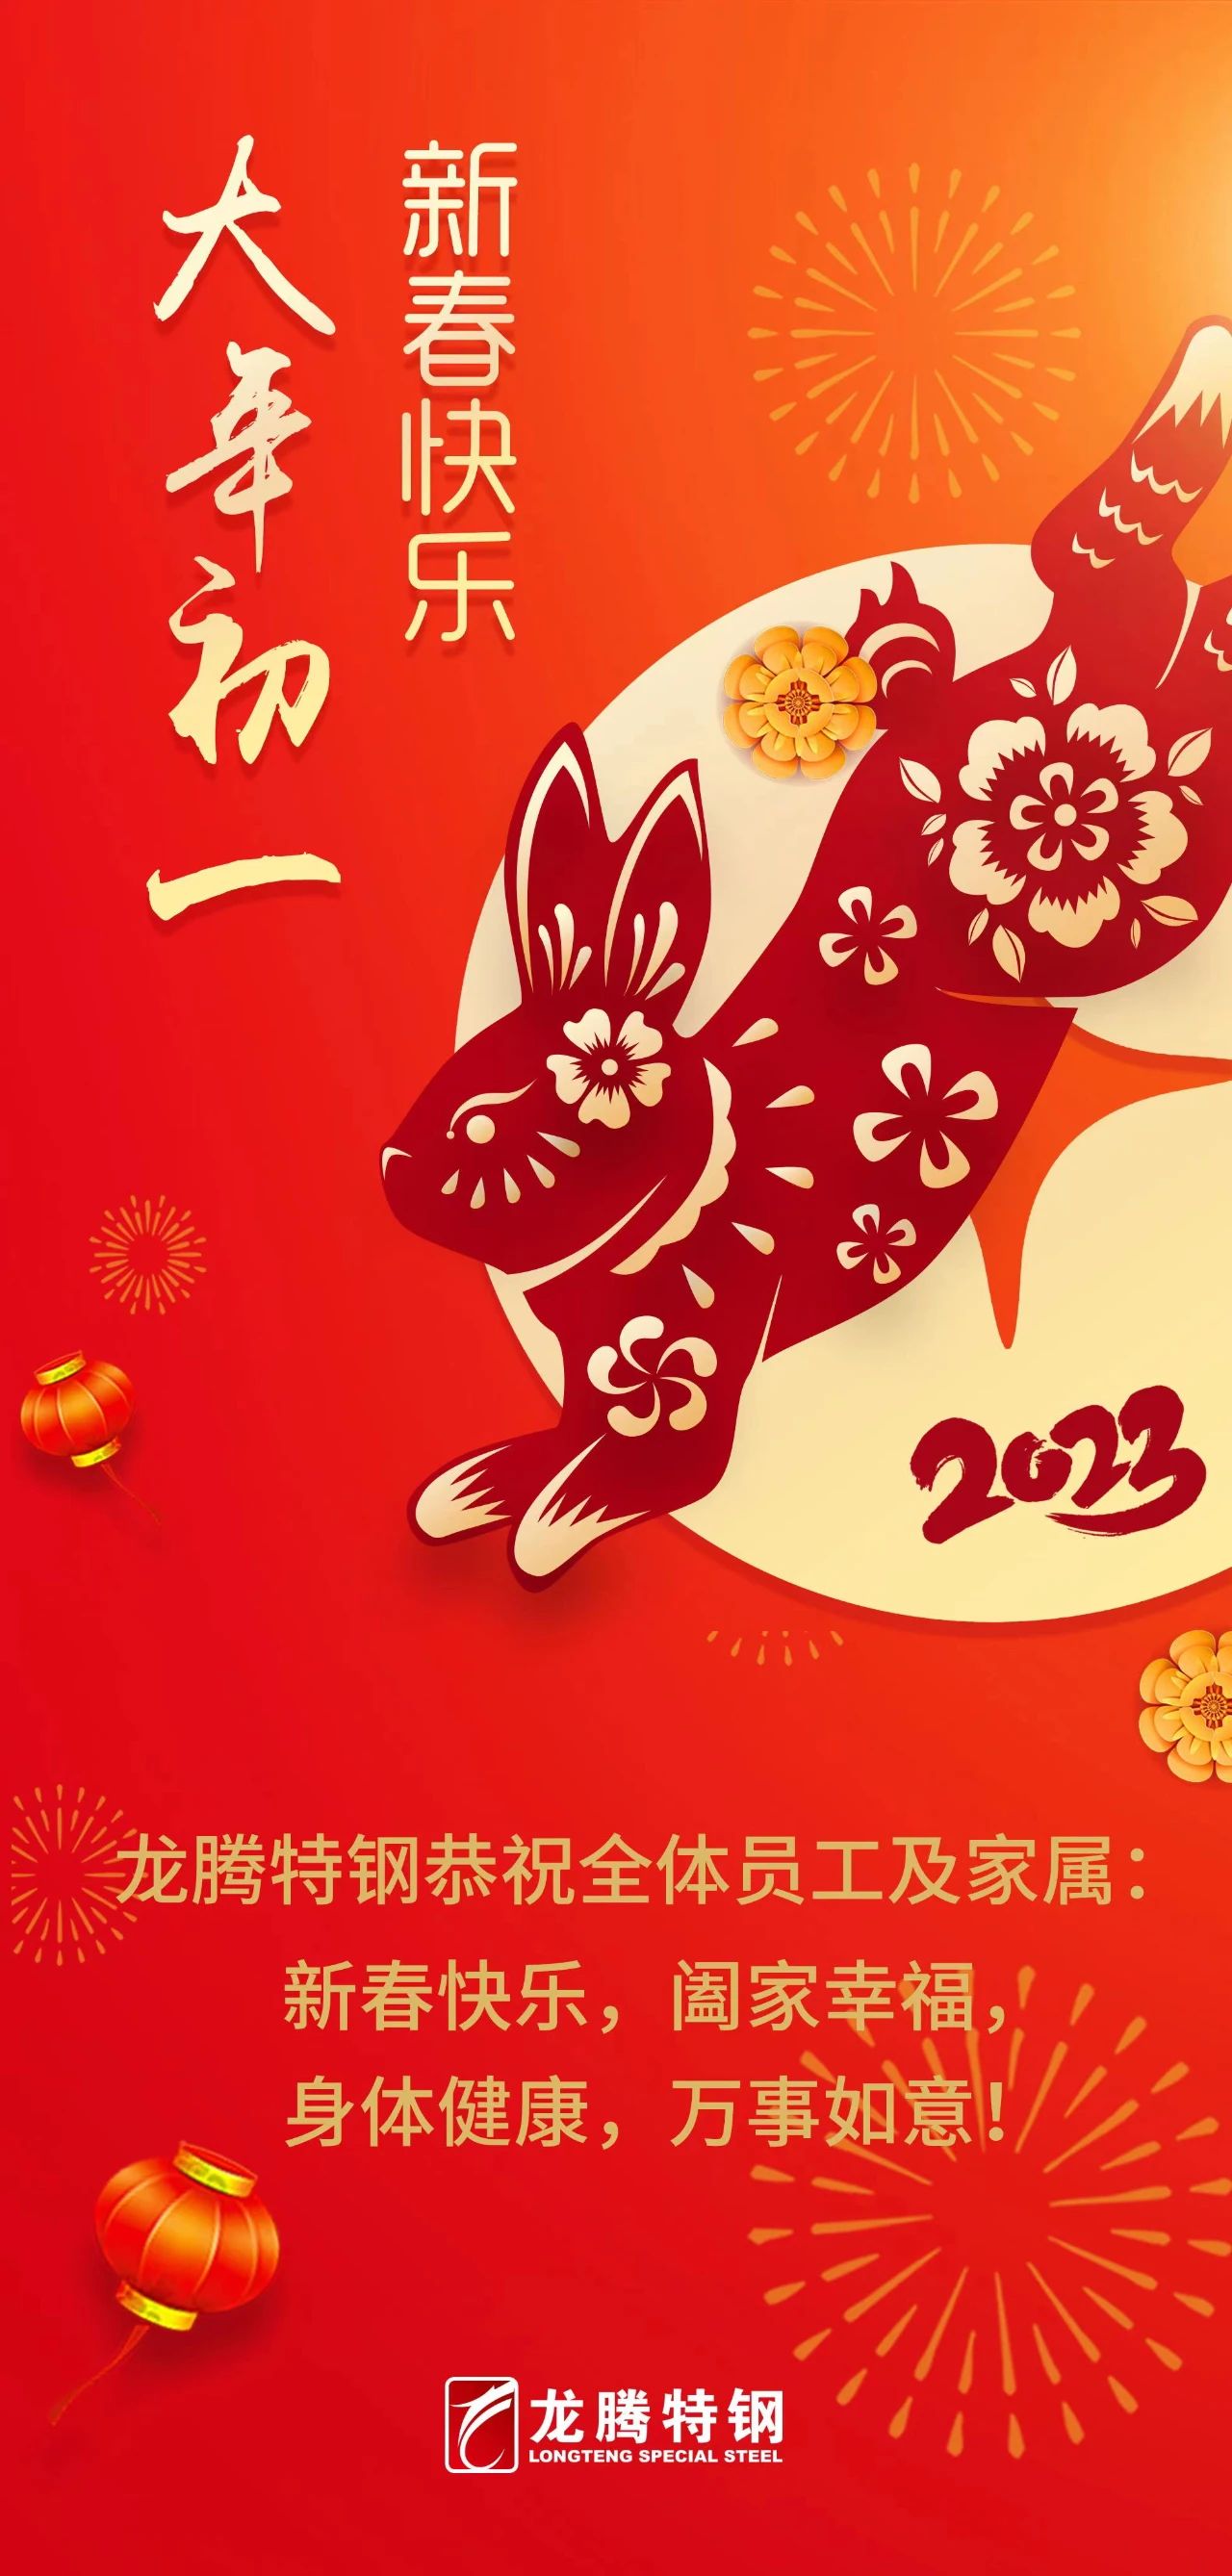 龍騰特鋼恭祝全體員工新春快樂！